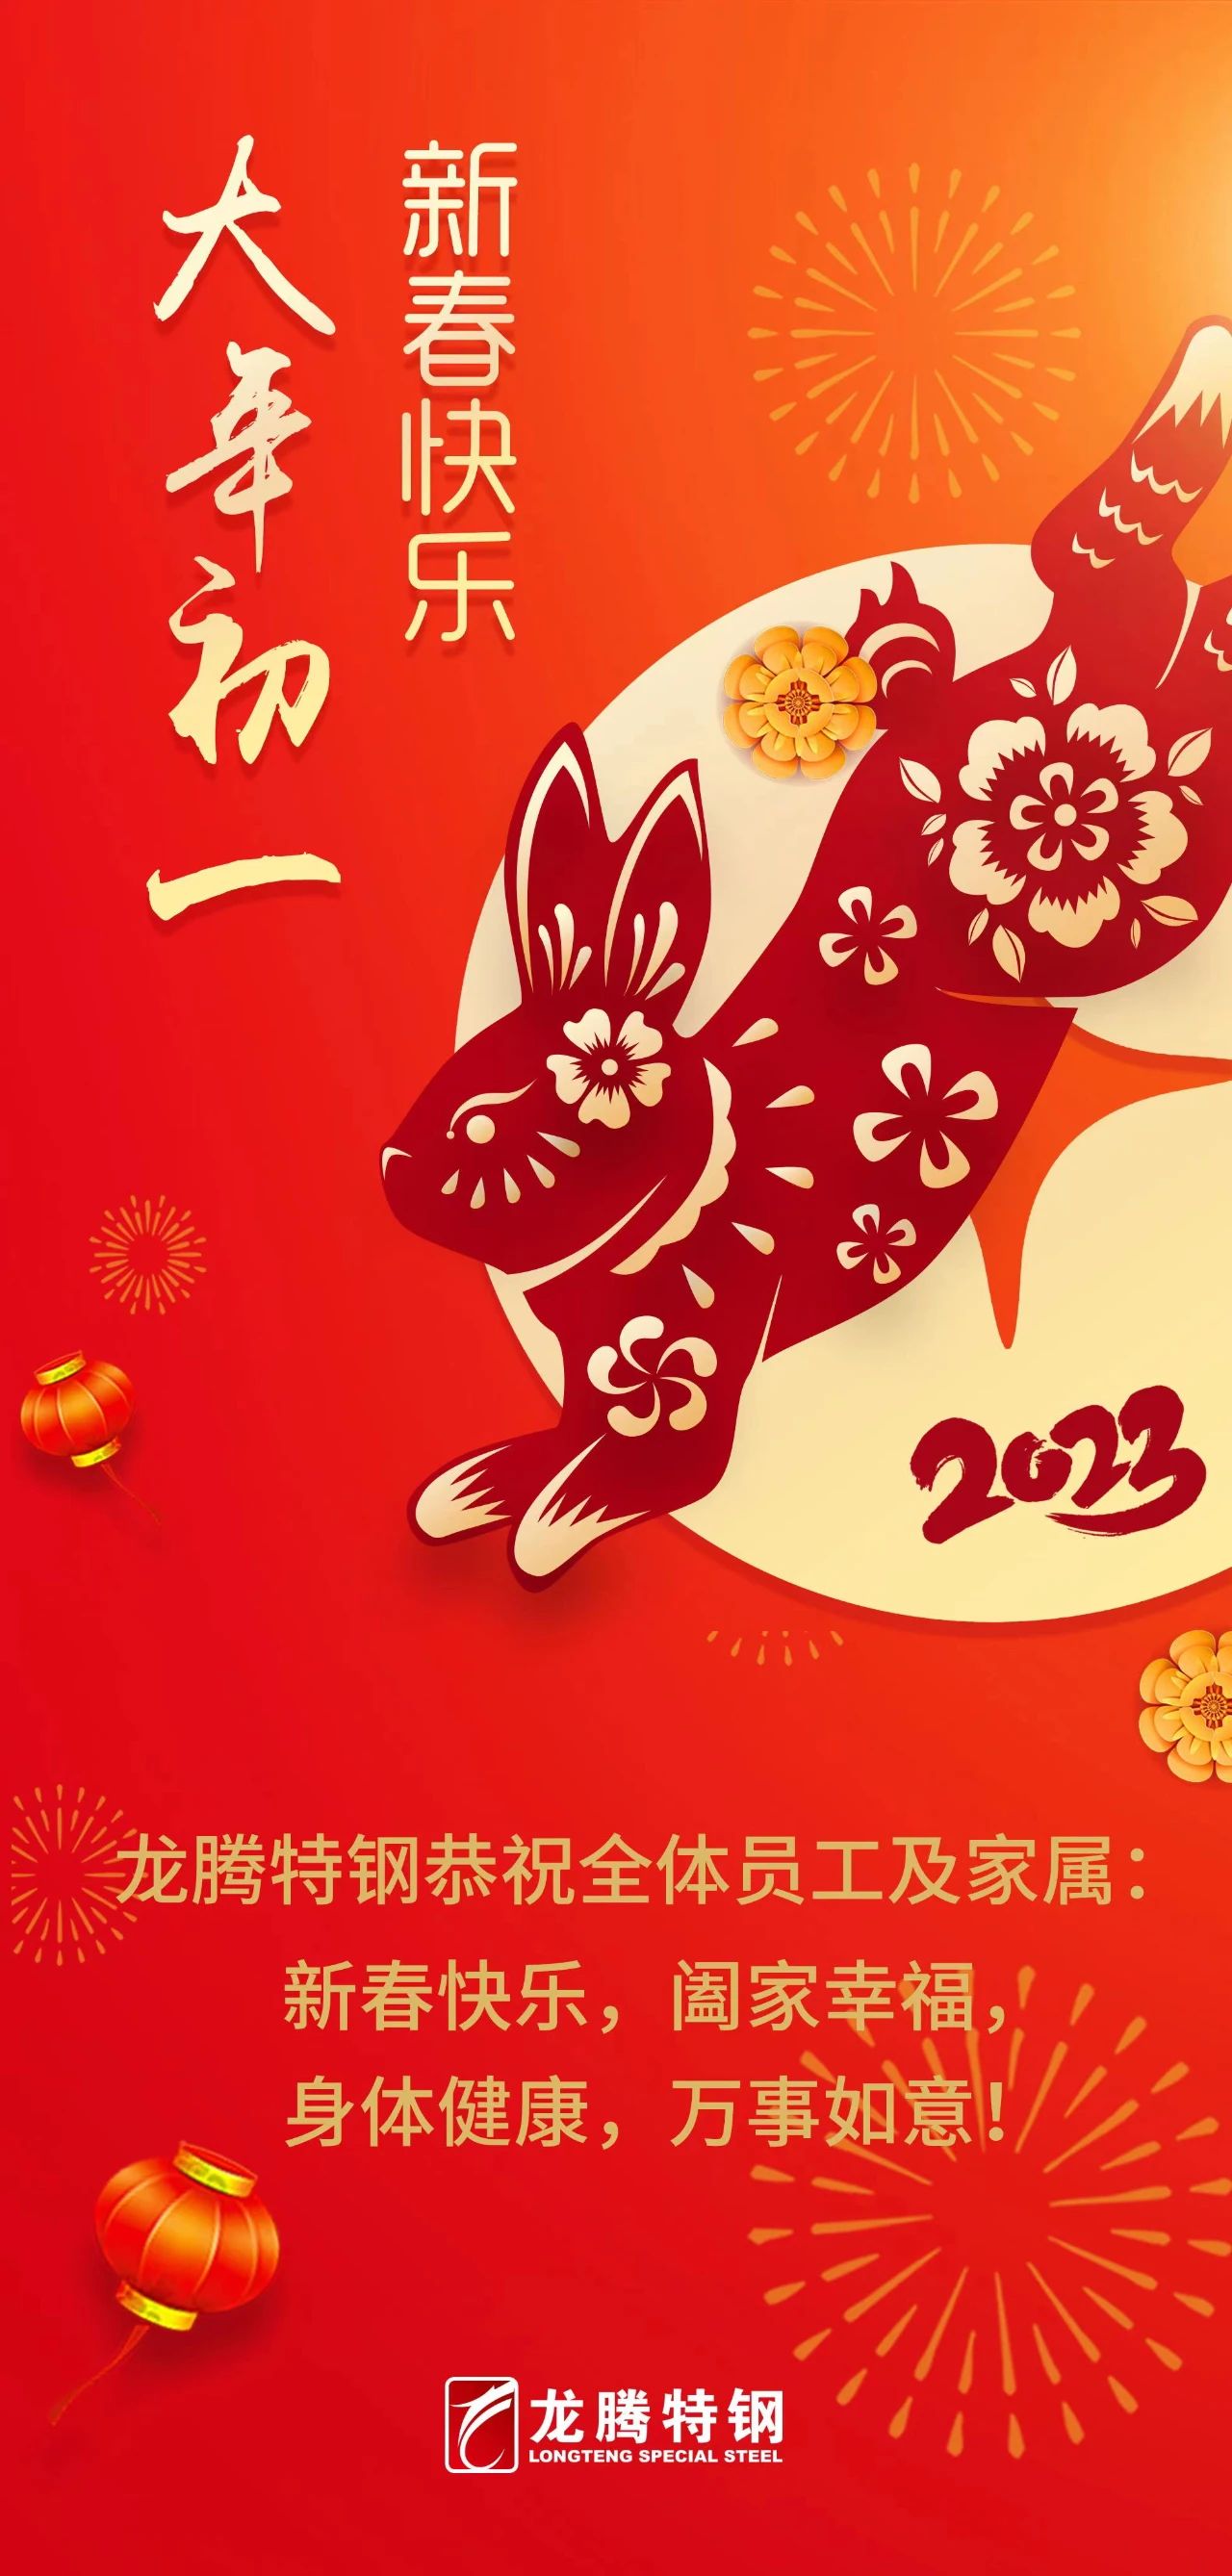 龍騰特鋼恭祝全體員工新春快樂！